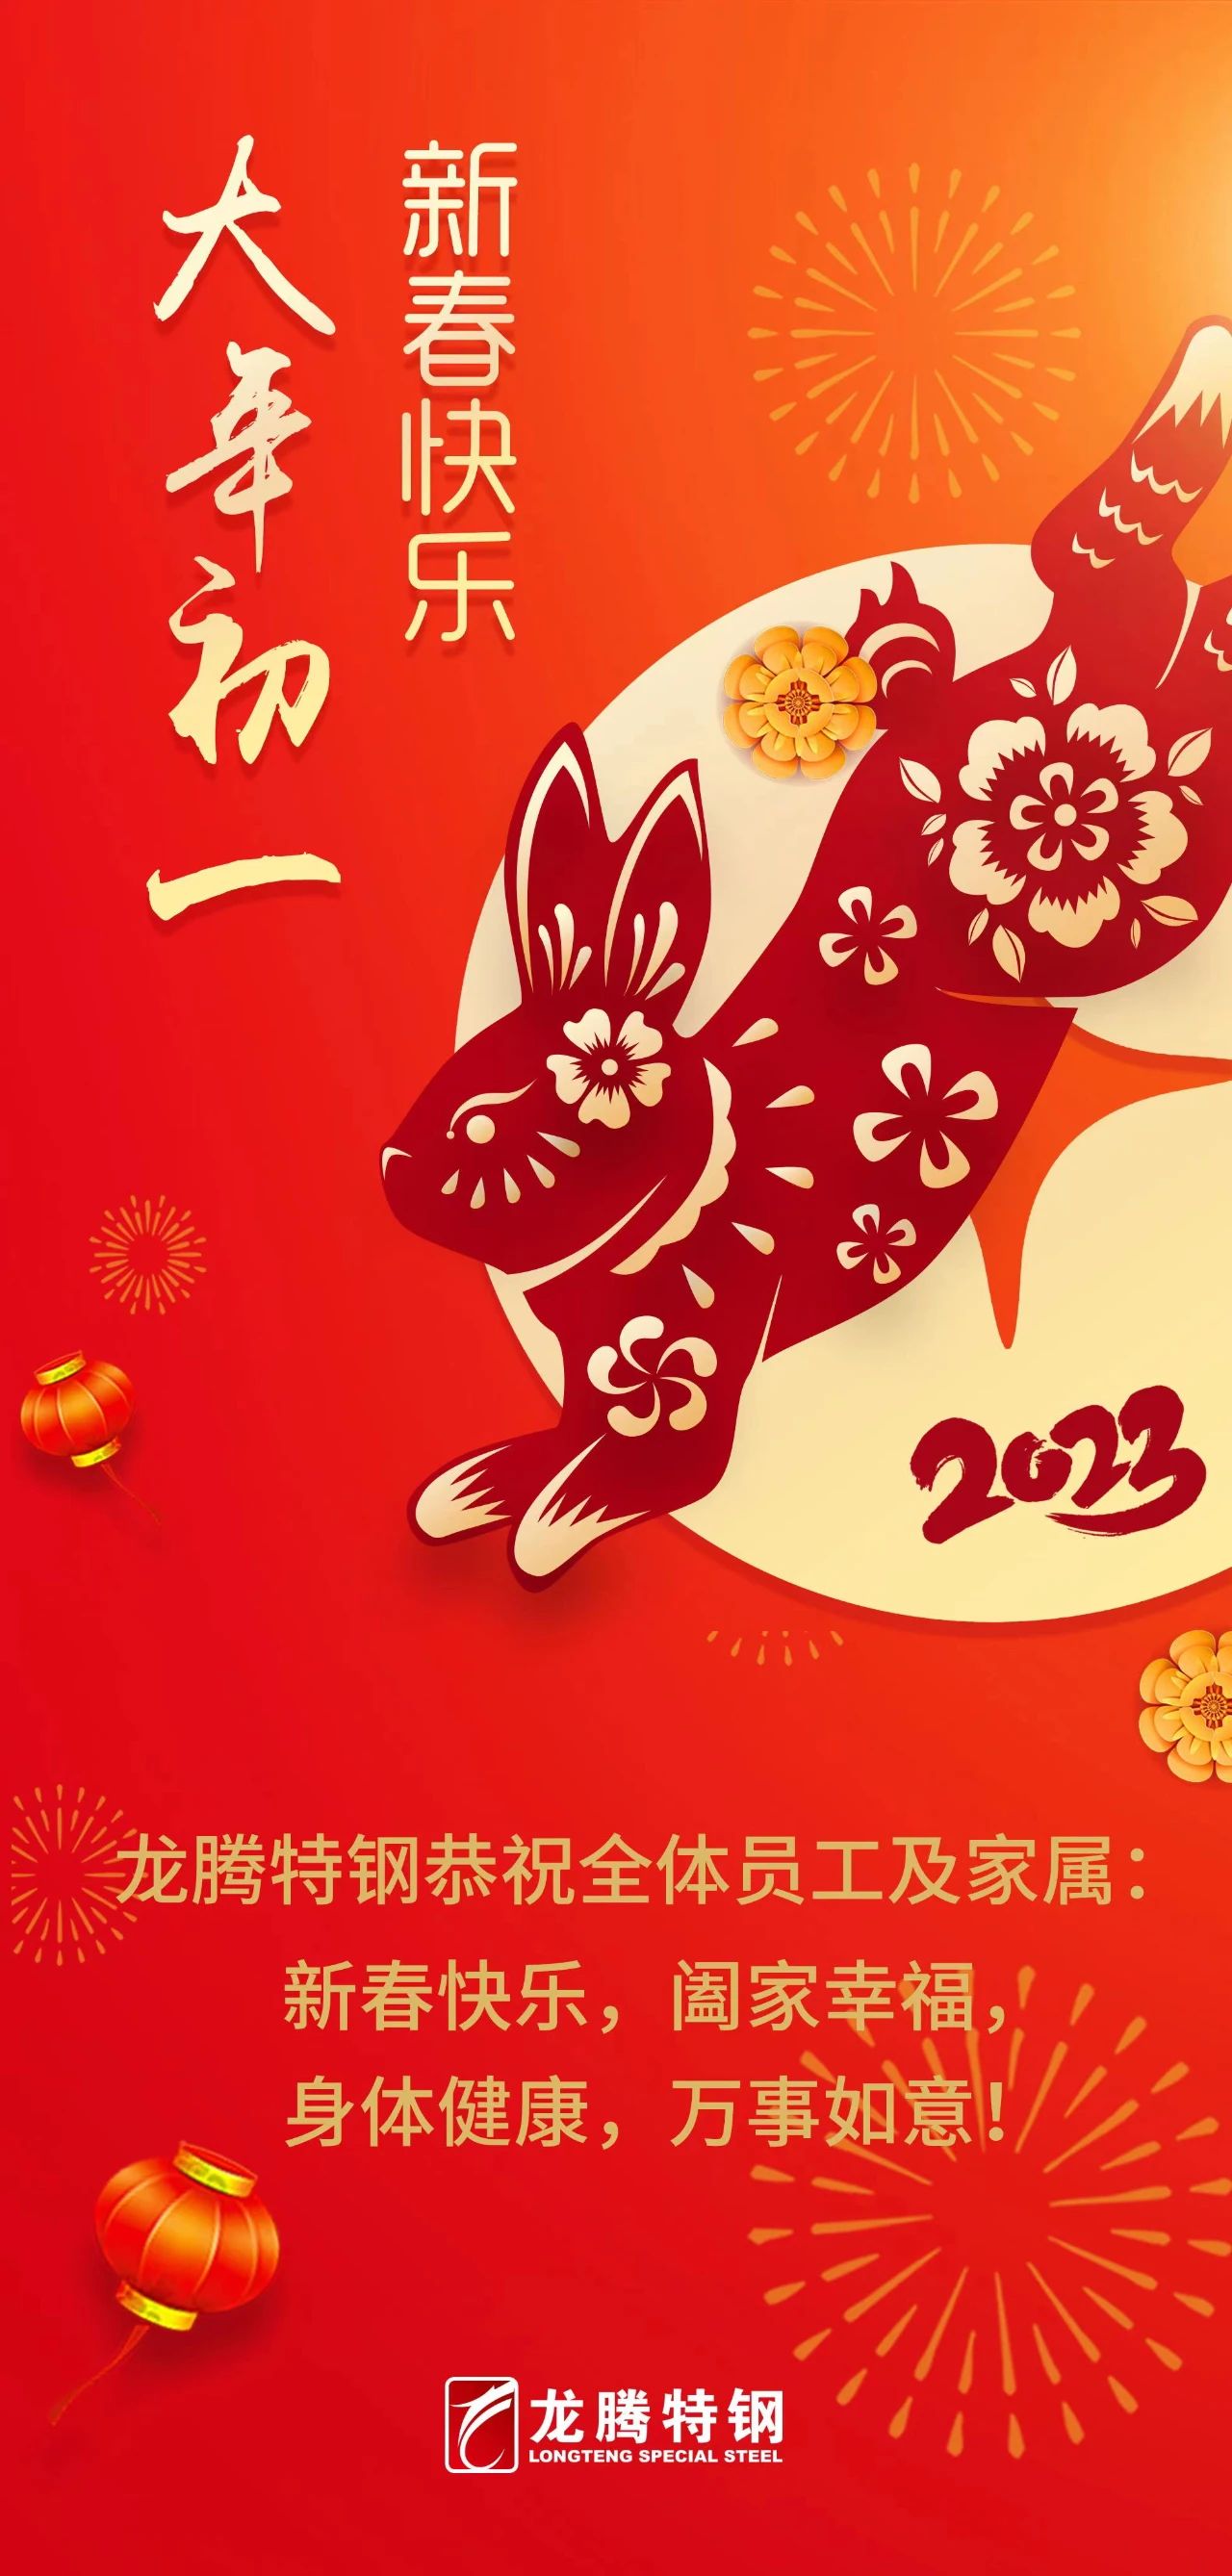 龍騰特鋼恭祝全體員工新春快樂！